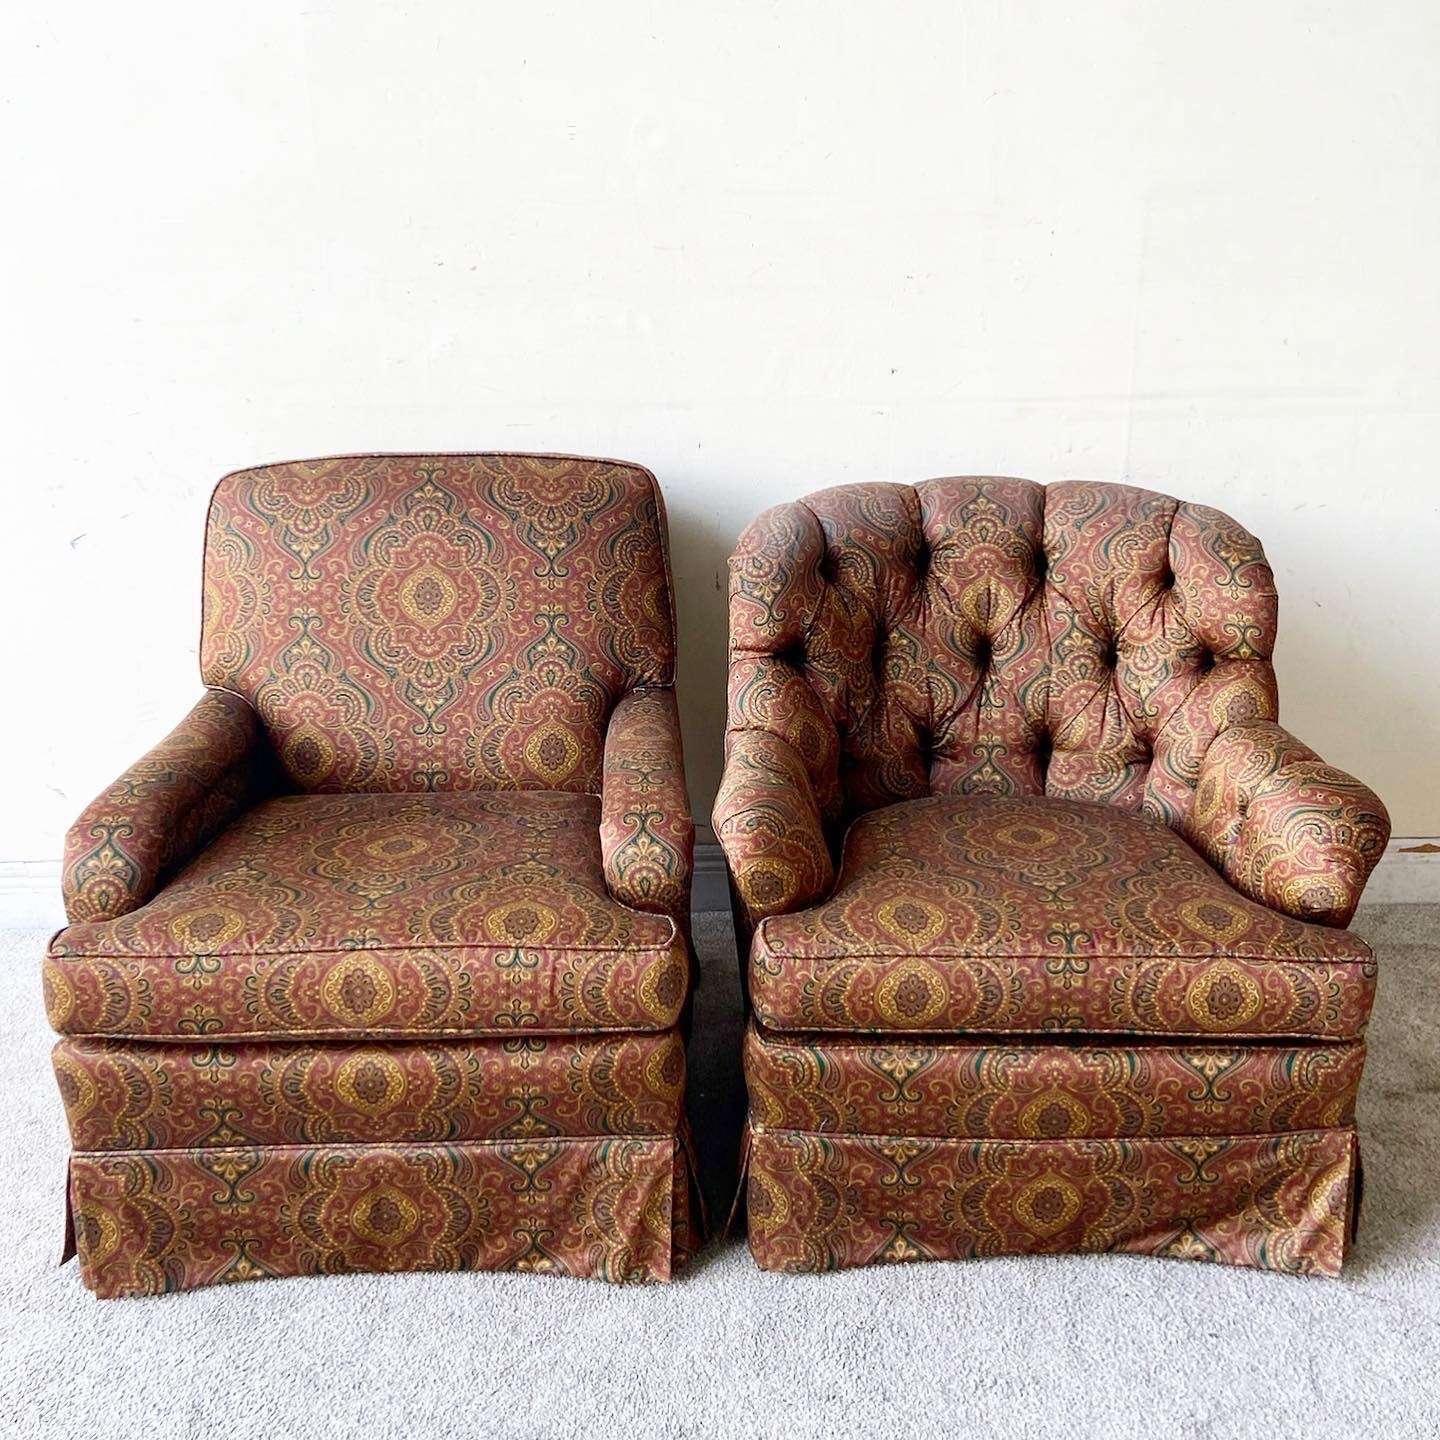 Erstaunlich Vintage Mitte des Jahrhunderts modernes Paar von seinem und ihrem Lounge-Stühle. Jedes ist mit einem wunderschönen mehrfarbigen Stoff versehen. Einer der Stühle hat eine getuftete Rückenlehne.

Der andere Stuhl misst 29 